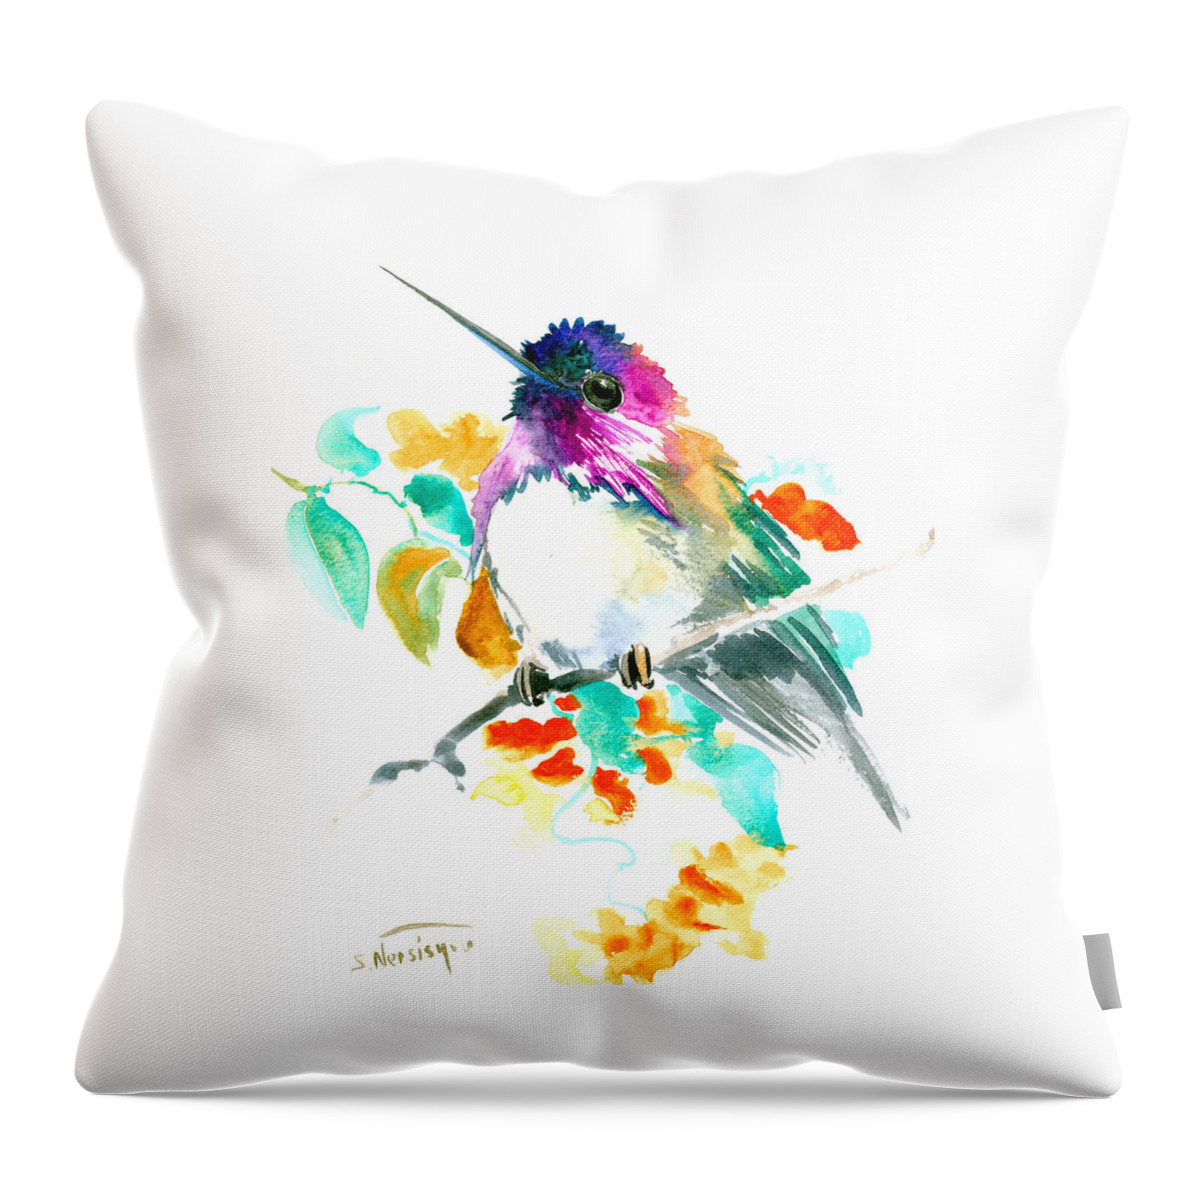 Hummingbird Throw Pillow featuring the painting Cute Little Hummingbird by Suren Nersisyan